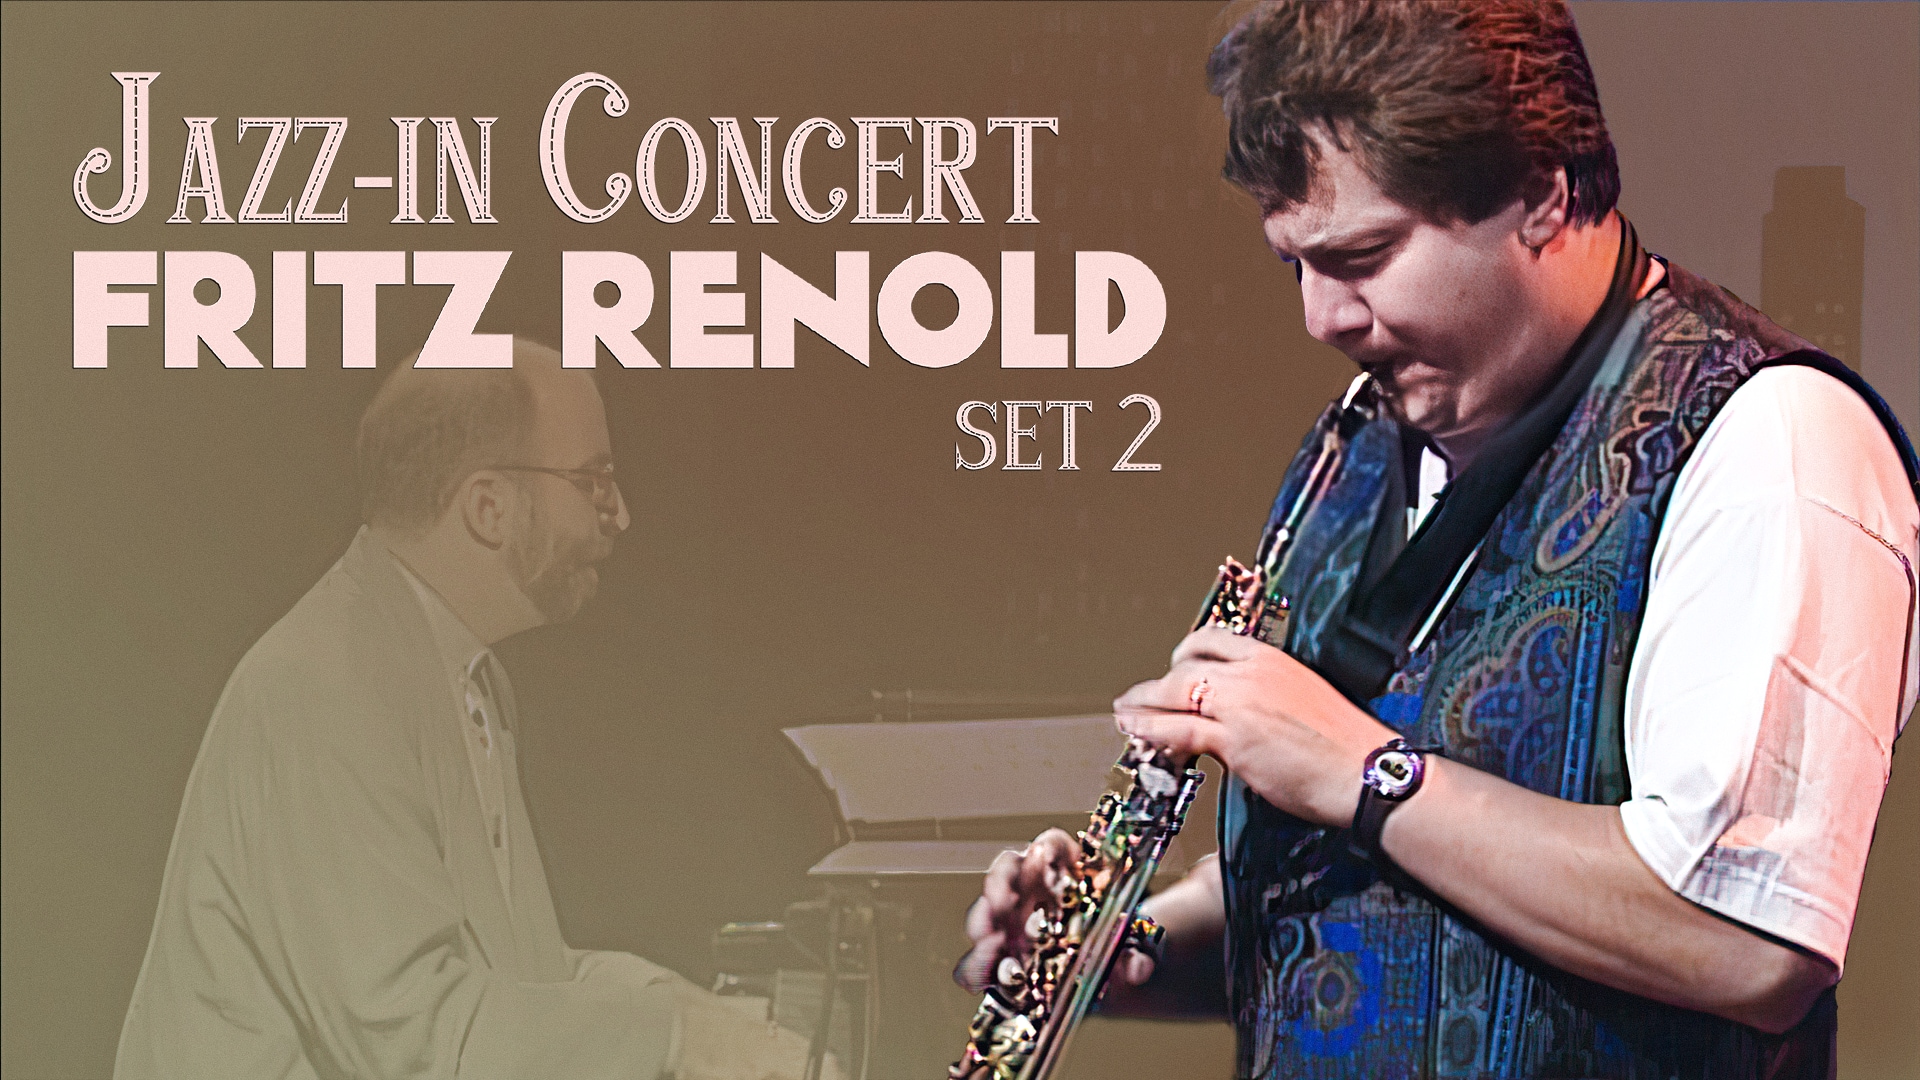 Jazz-in Concert - Fritz Renold (Set 2)